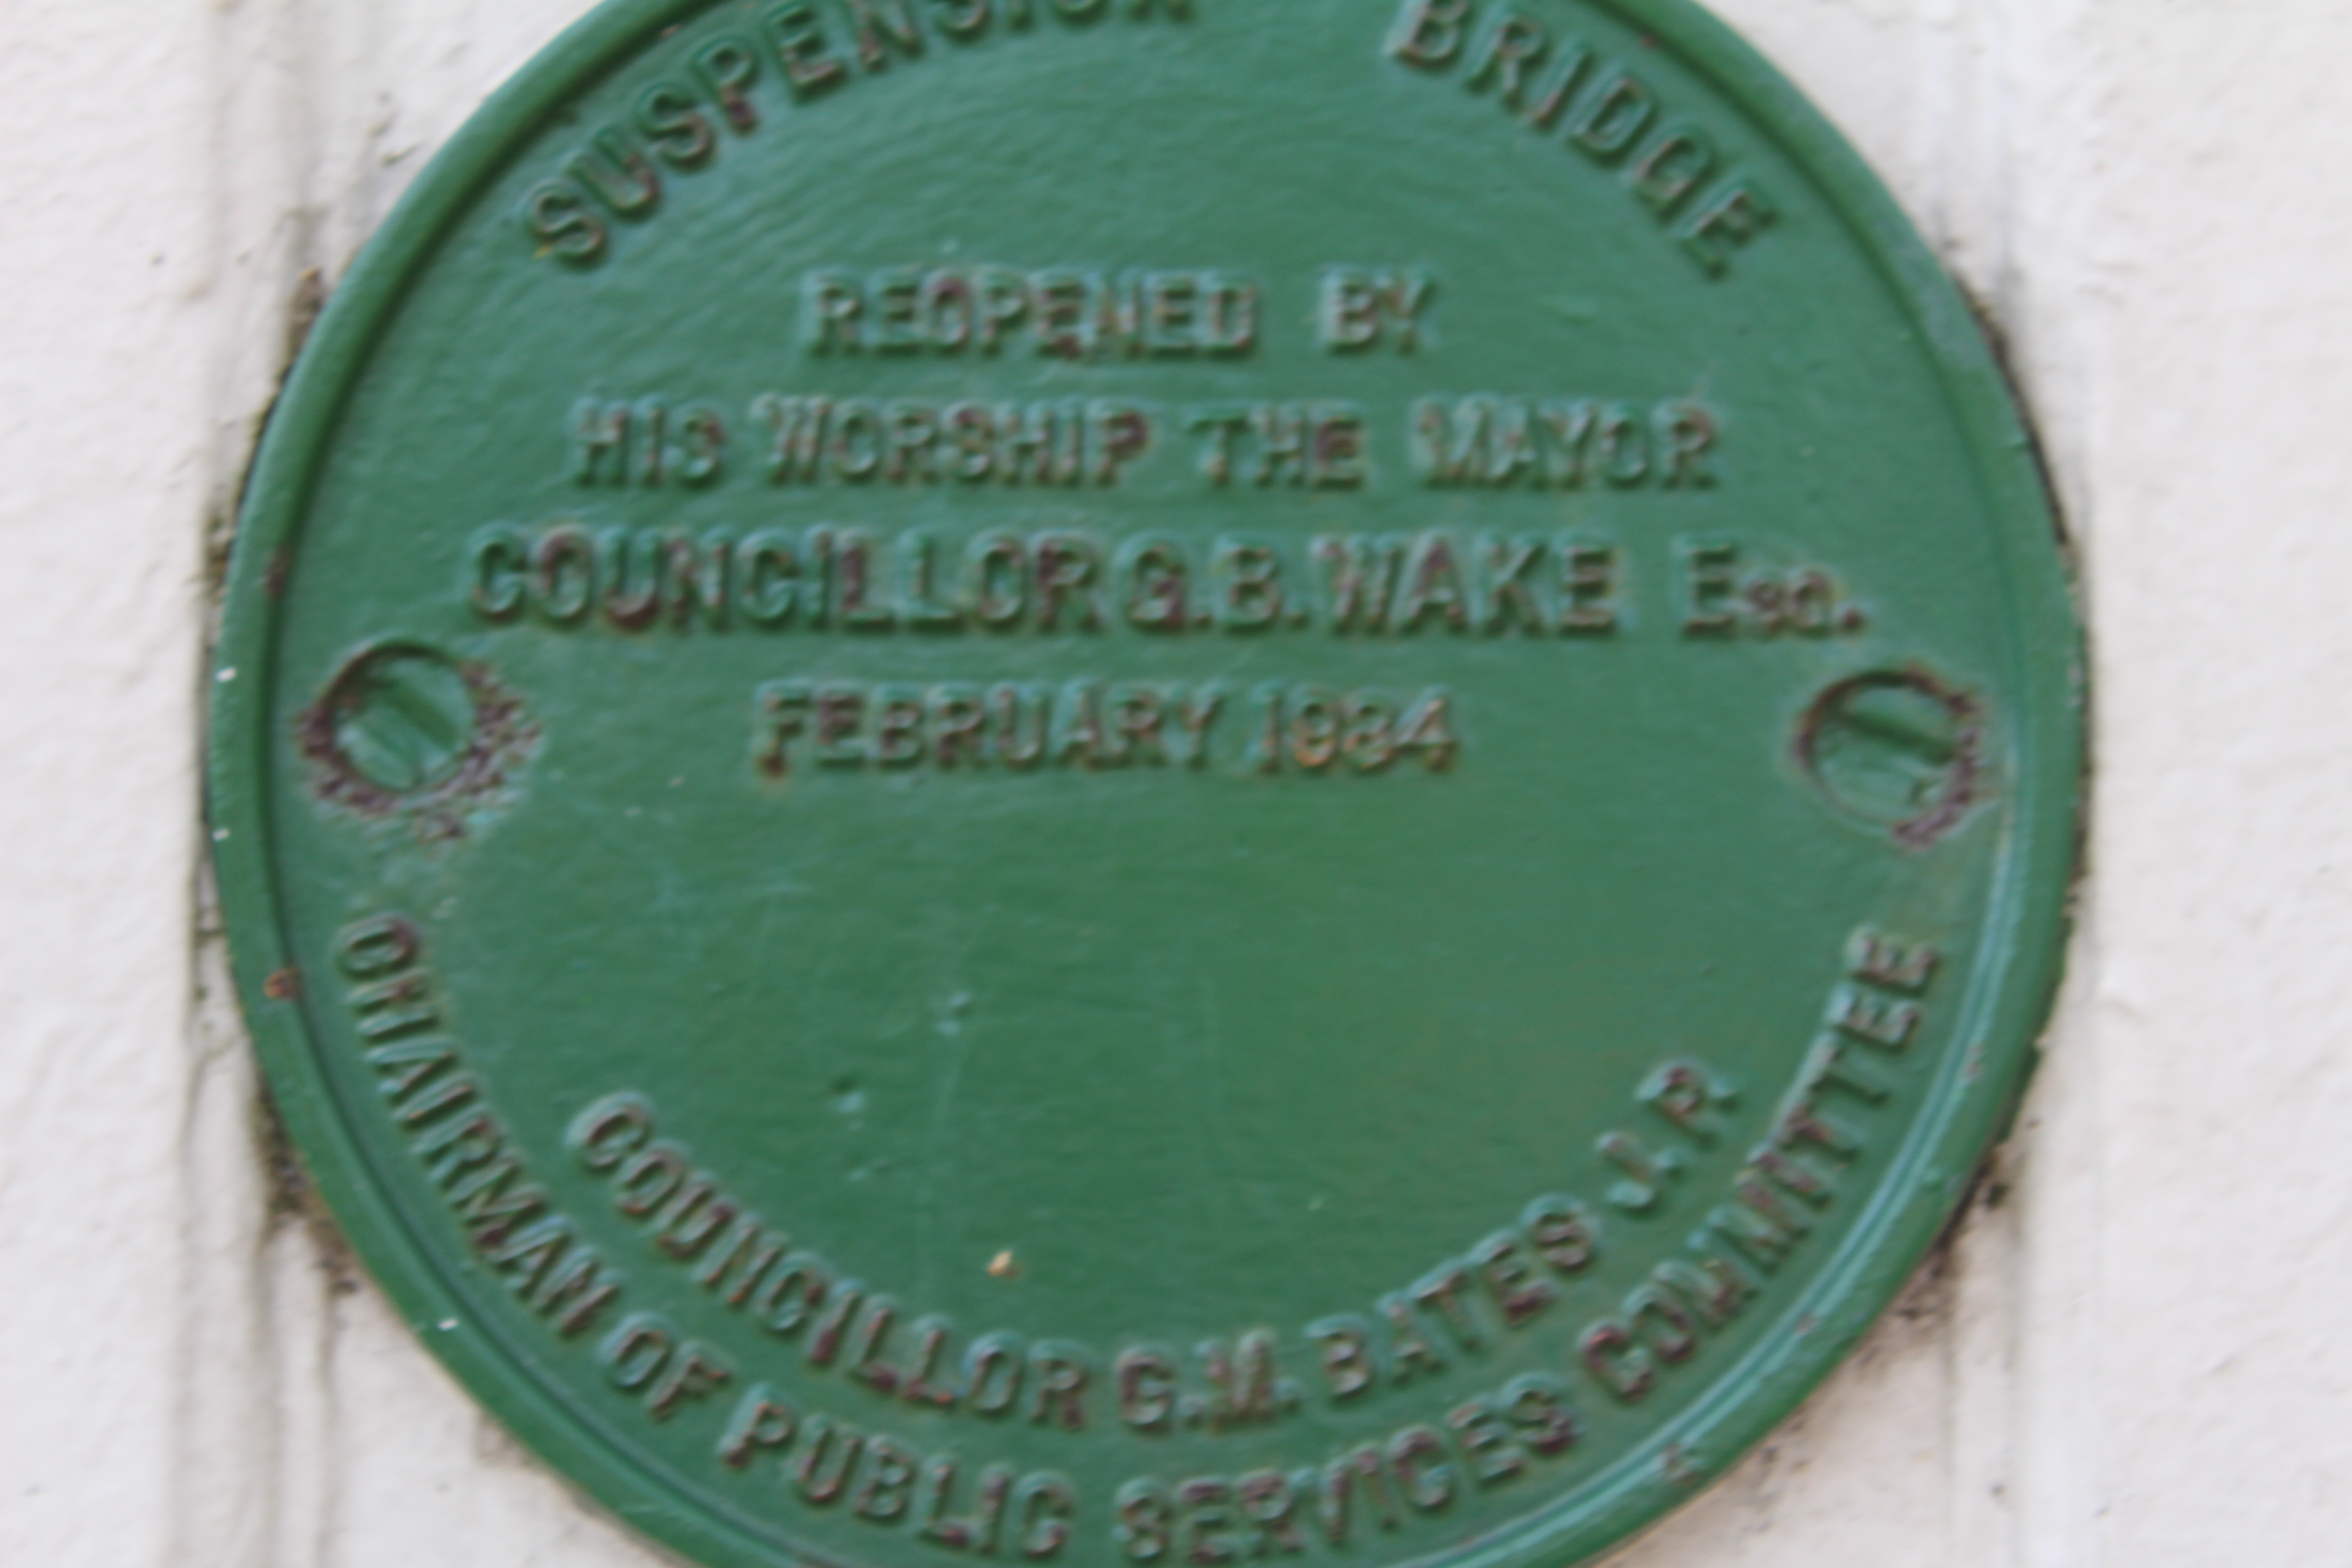 Suspension Bridge re-opening commemorative plaque